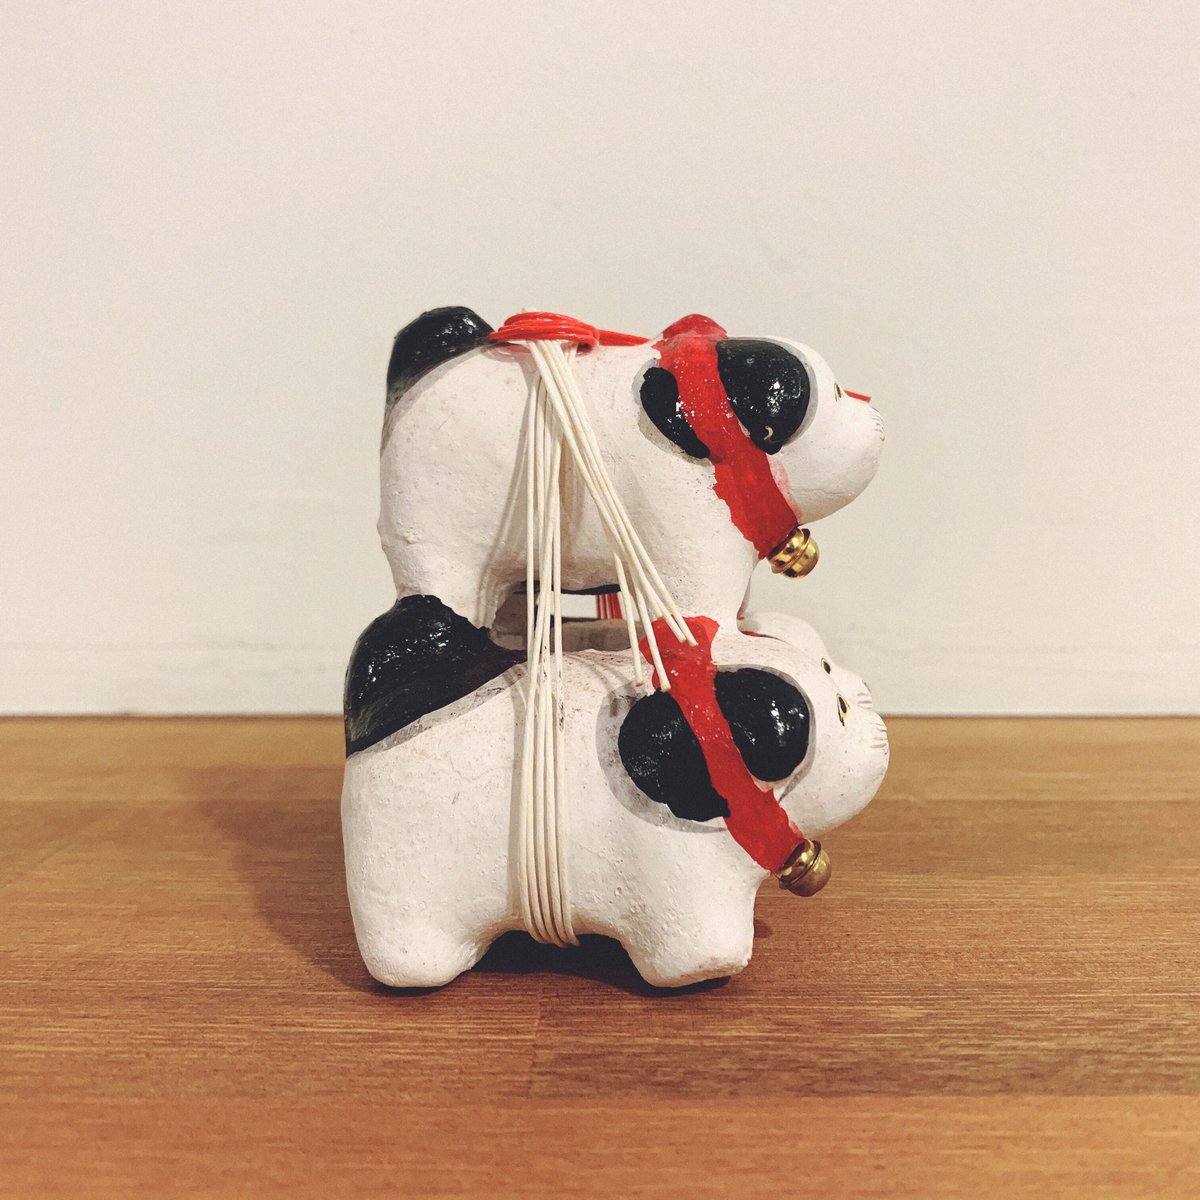 中野土人形の『組犬』 | 象々の郷土玩具